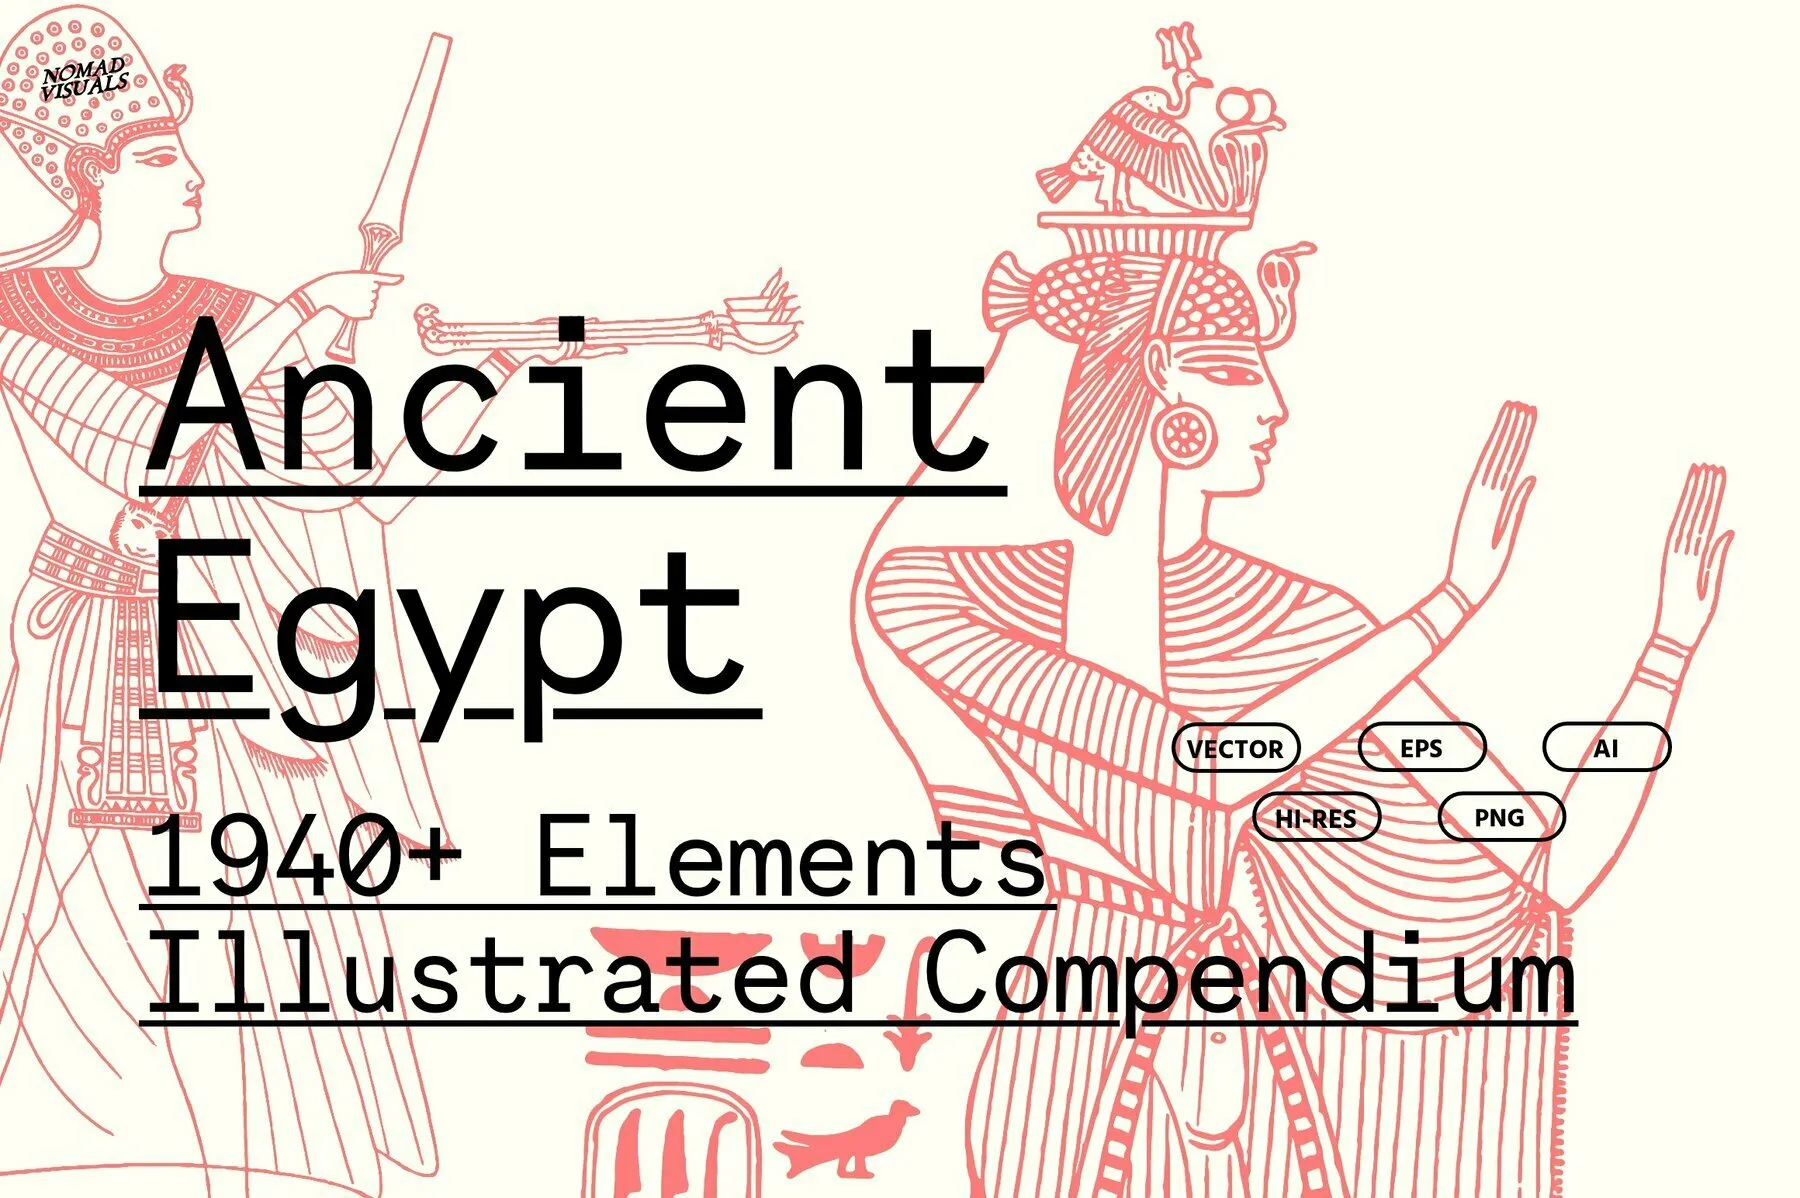 Ancient Egypt 1940+ Elements